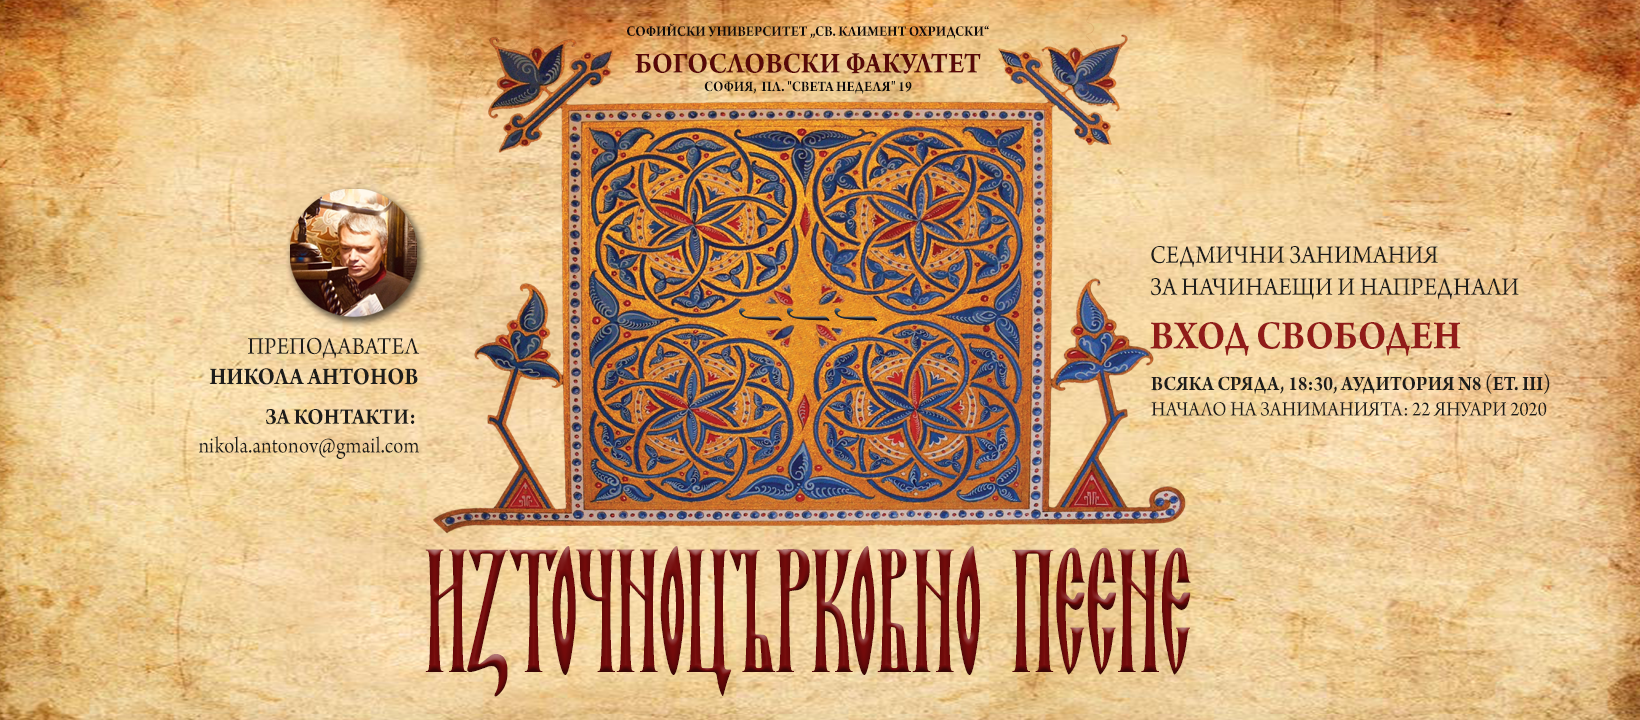 Приложение Източно пеене БФ Никола Антонов - Cover.png